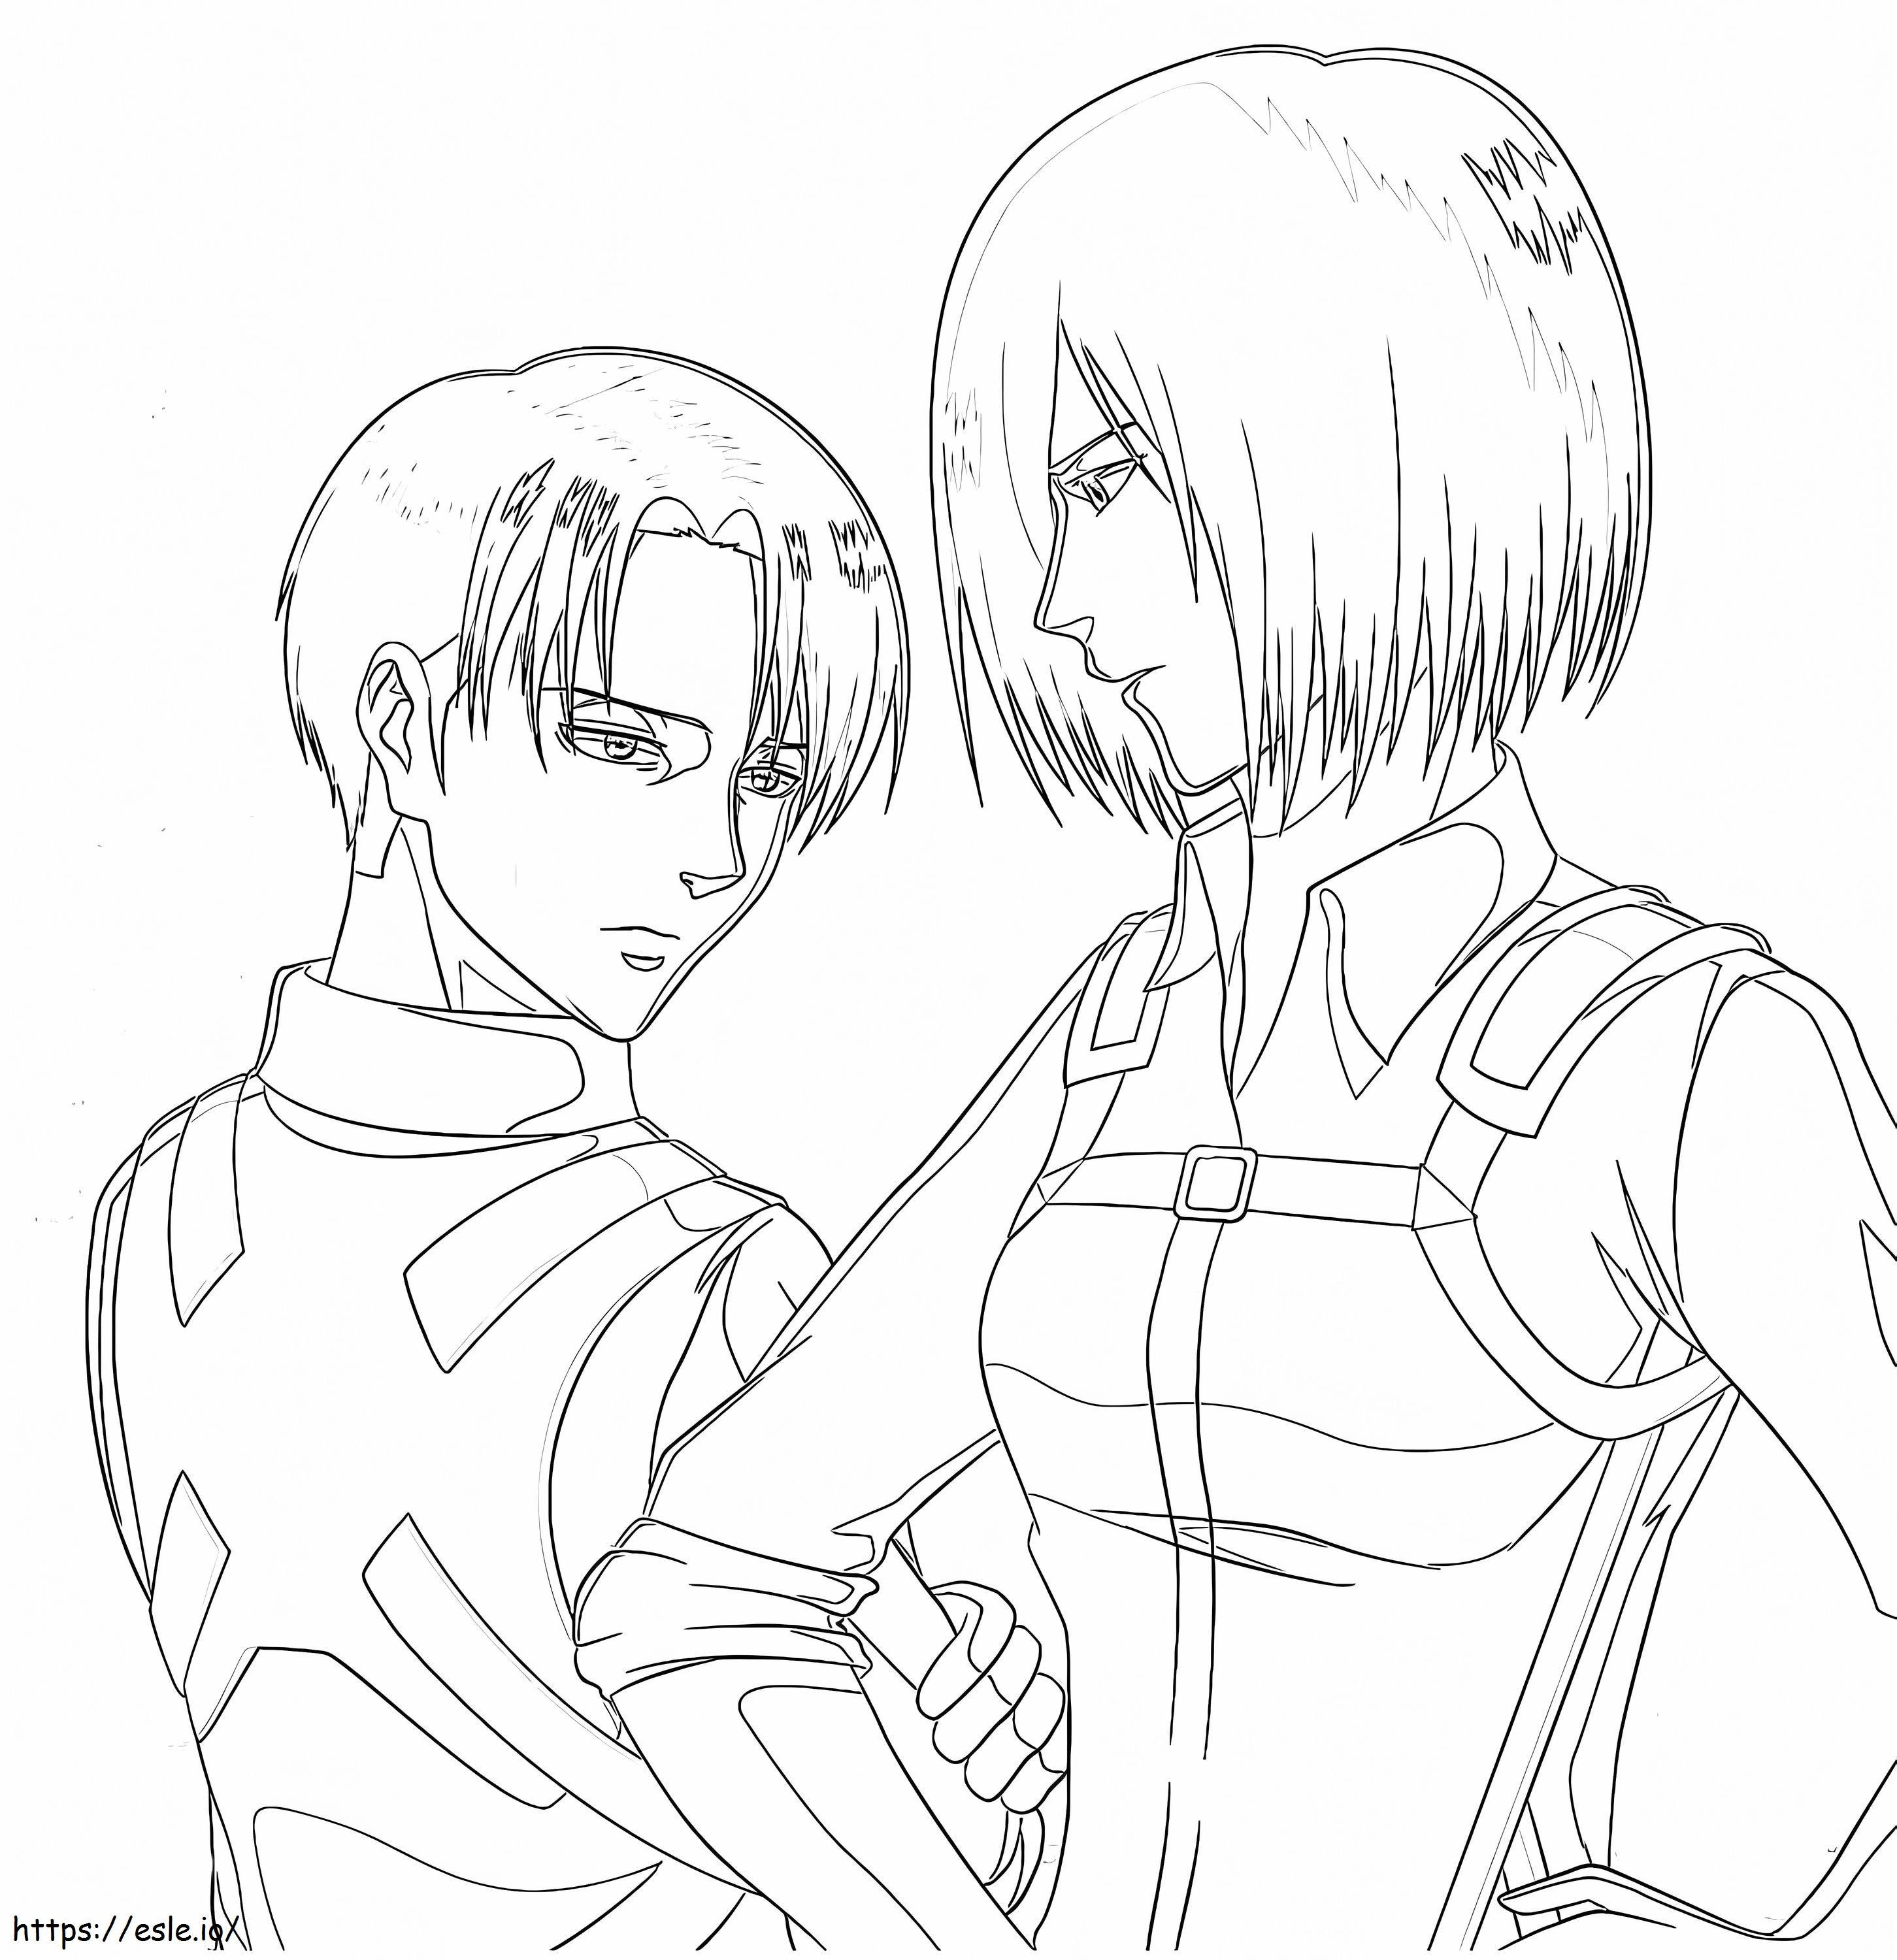 Mikasa ve Levi boyama